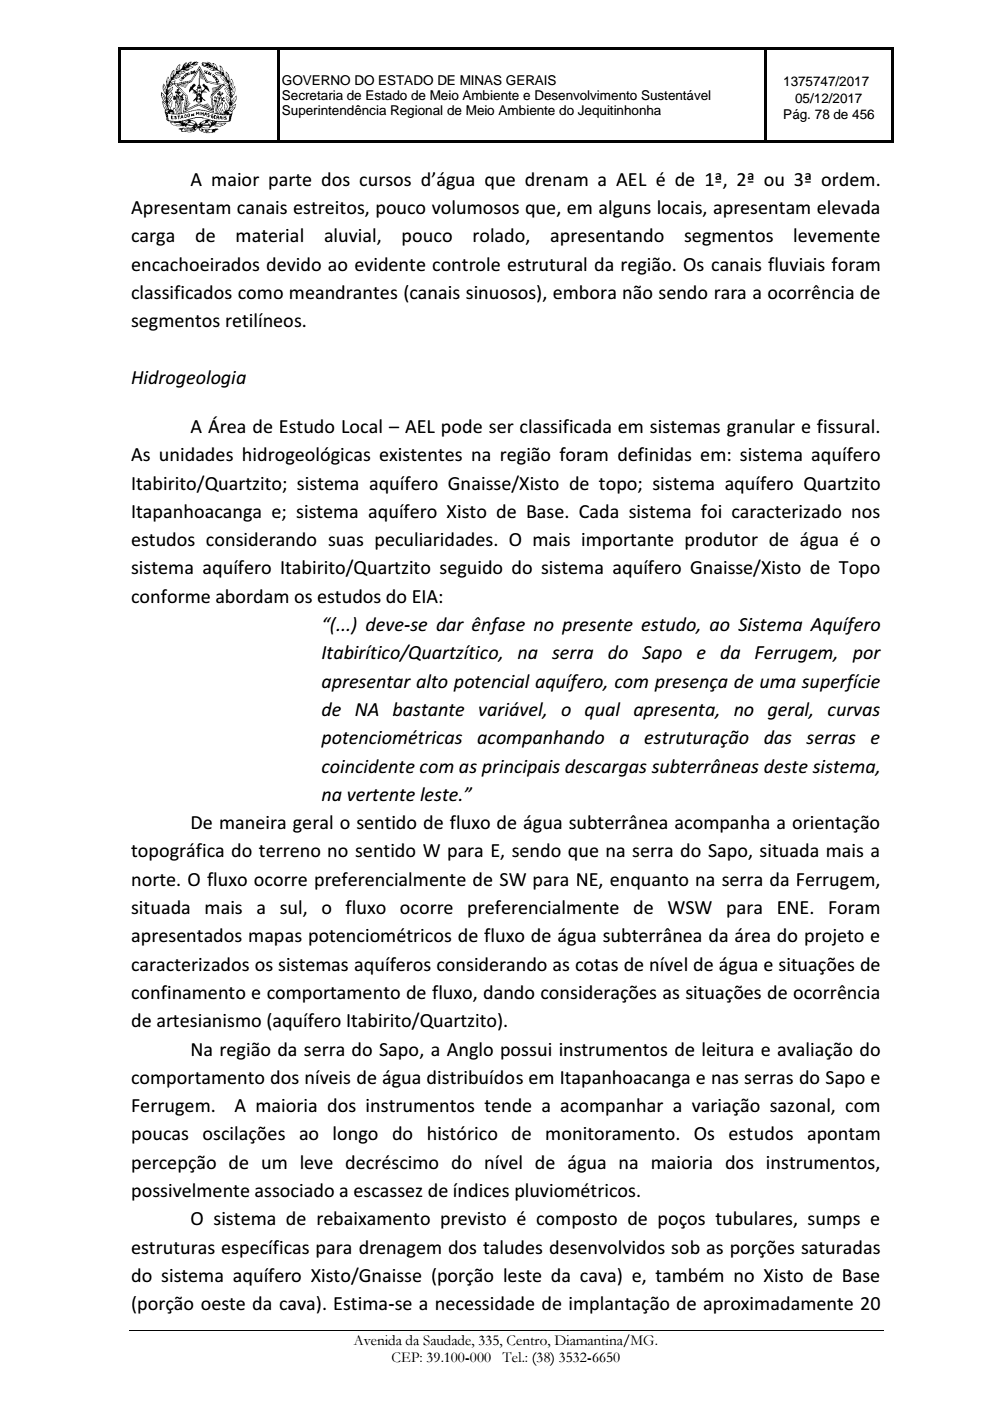 Page 78 from Parecer único da Secretaria de estado de Meio Ambiente e Desenvolvimento Sustentável (SEMAD)